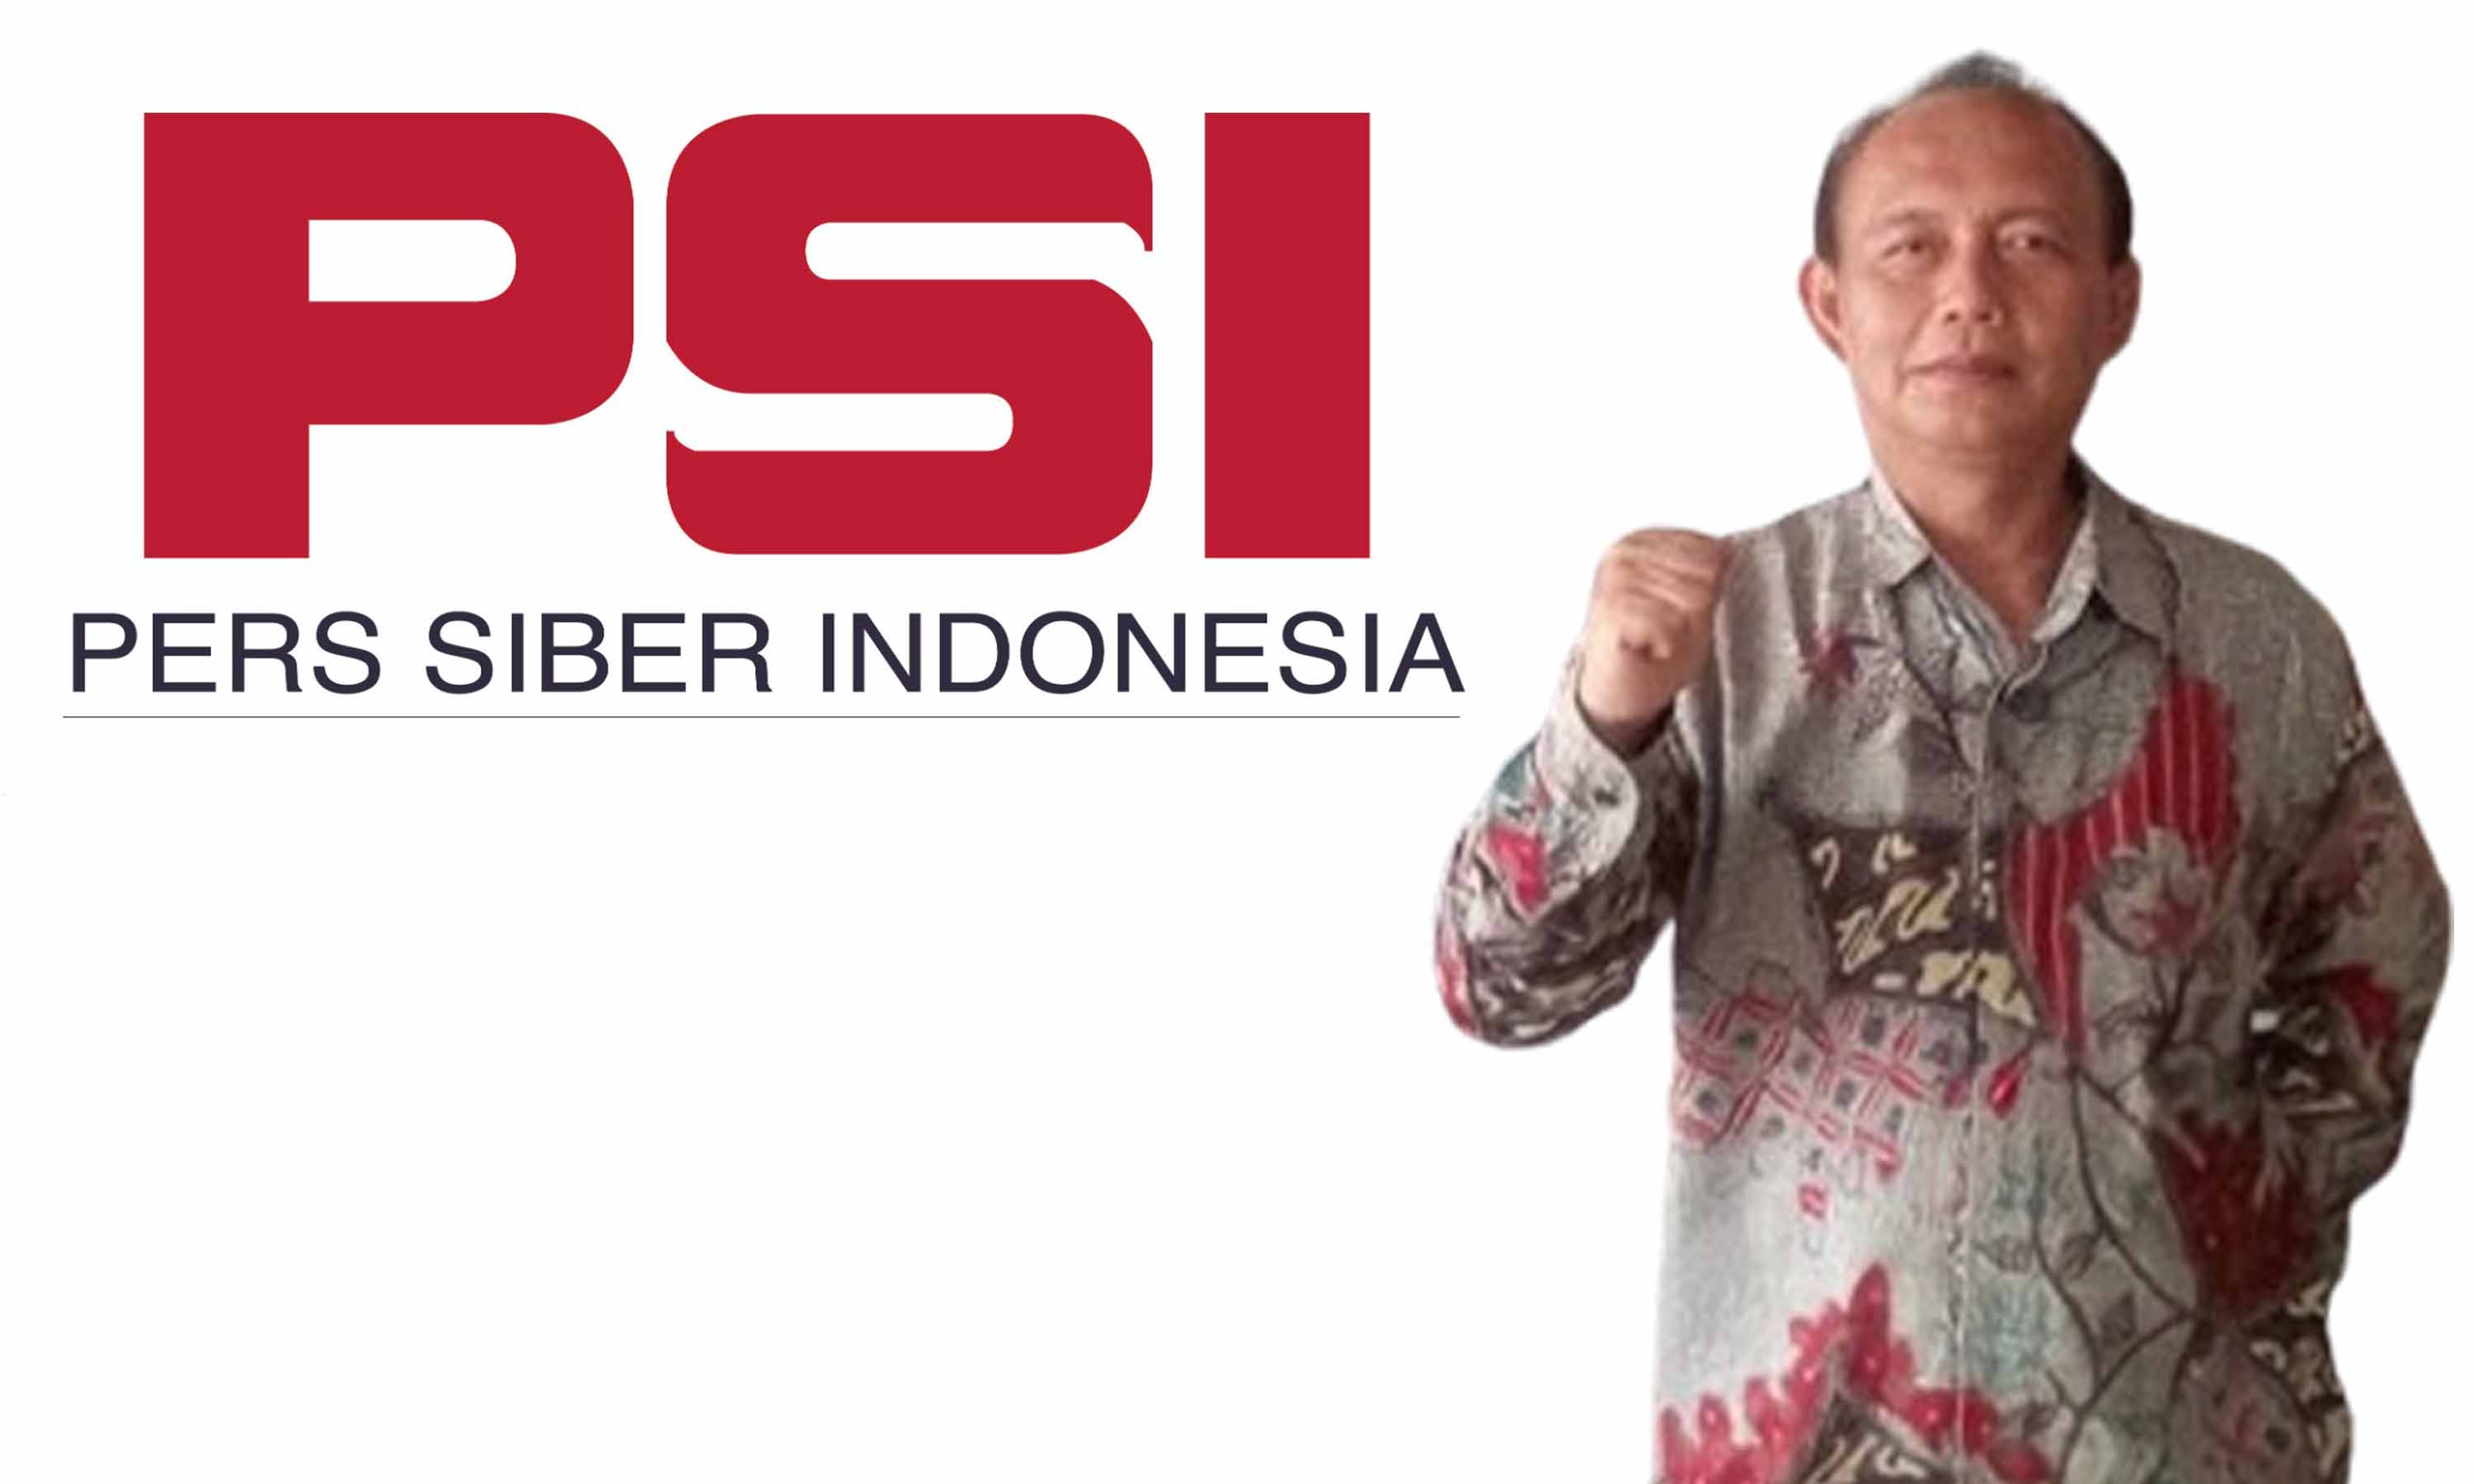 Pendirian Pers Siber Indonesia Mendapat Dukungan dari Petinggi Disway.id dan SPS